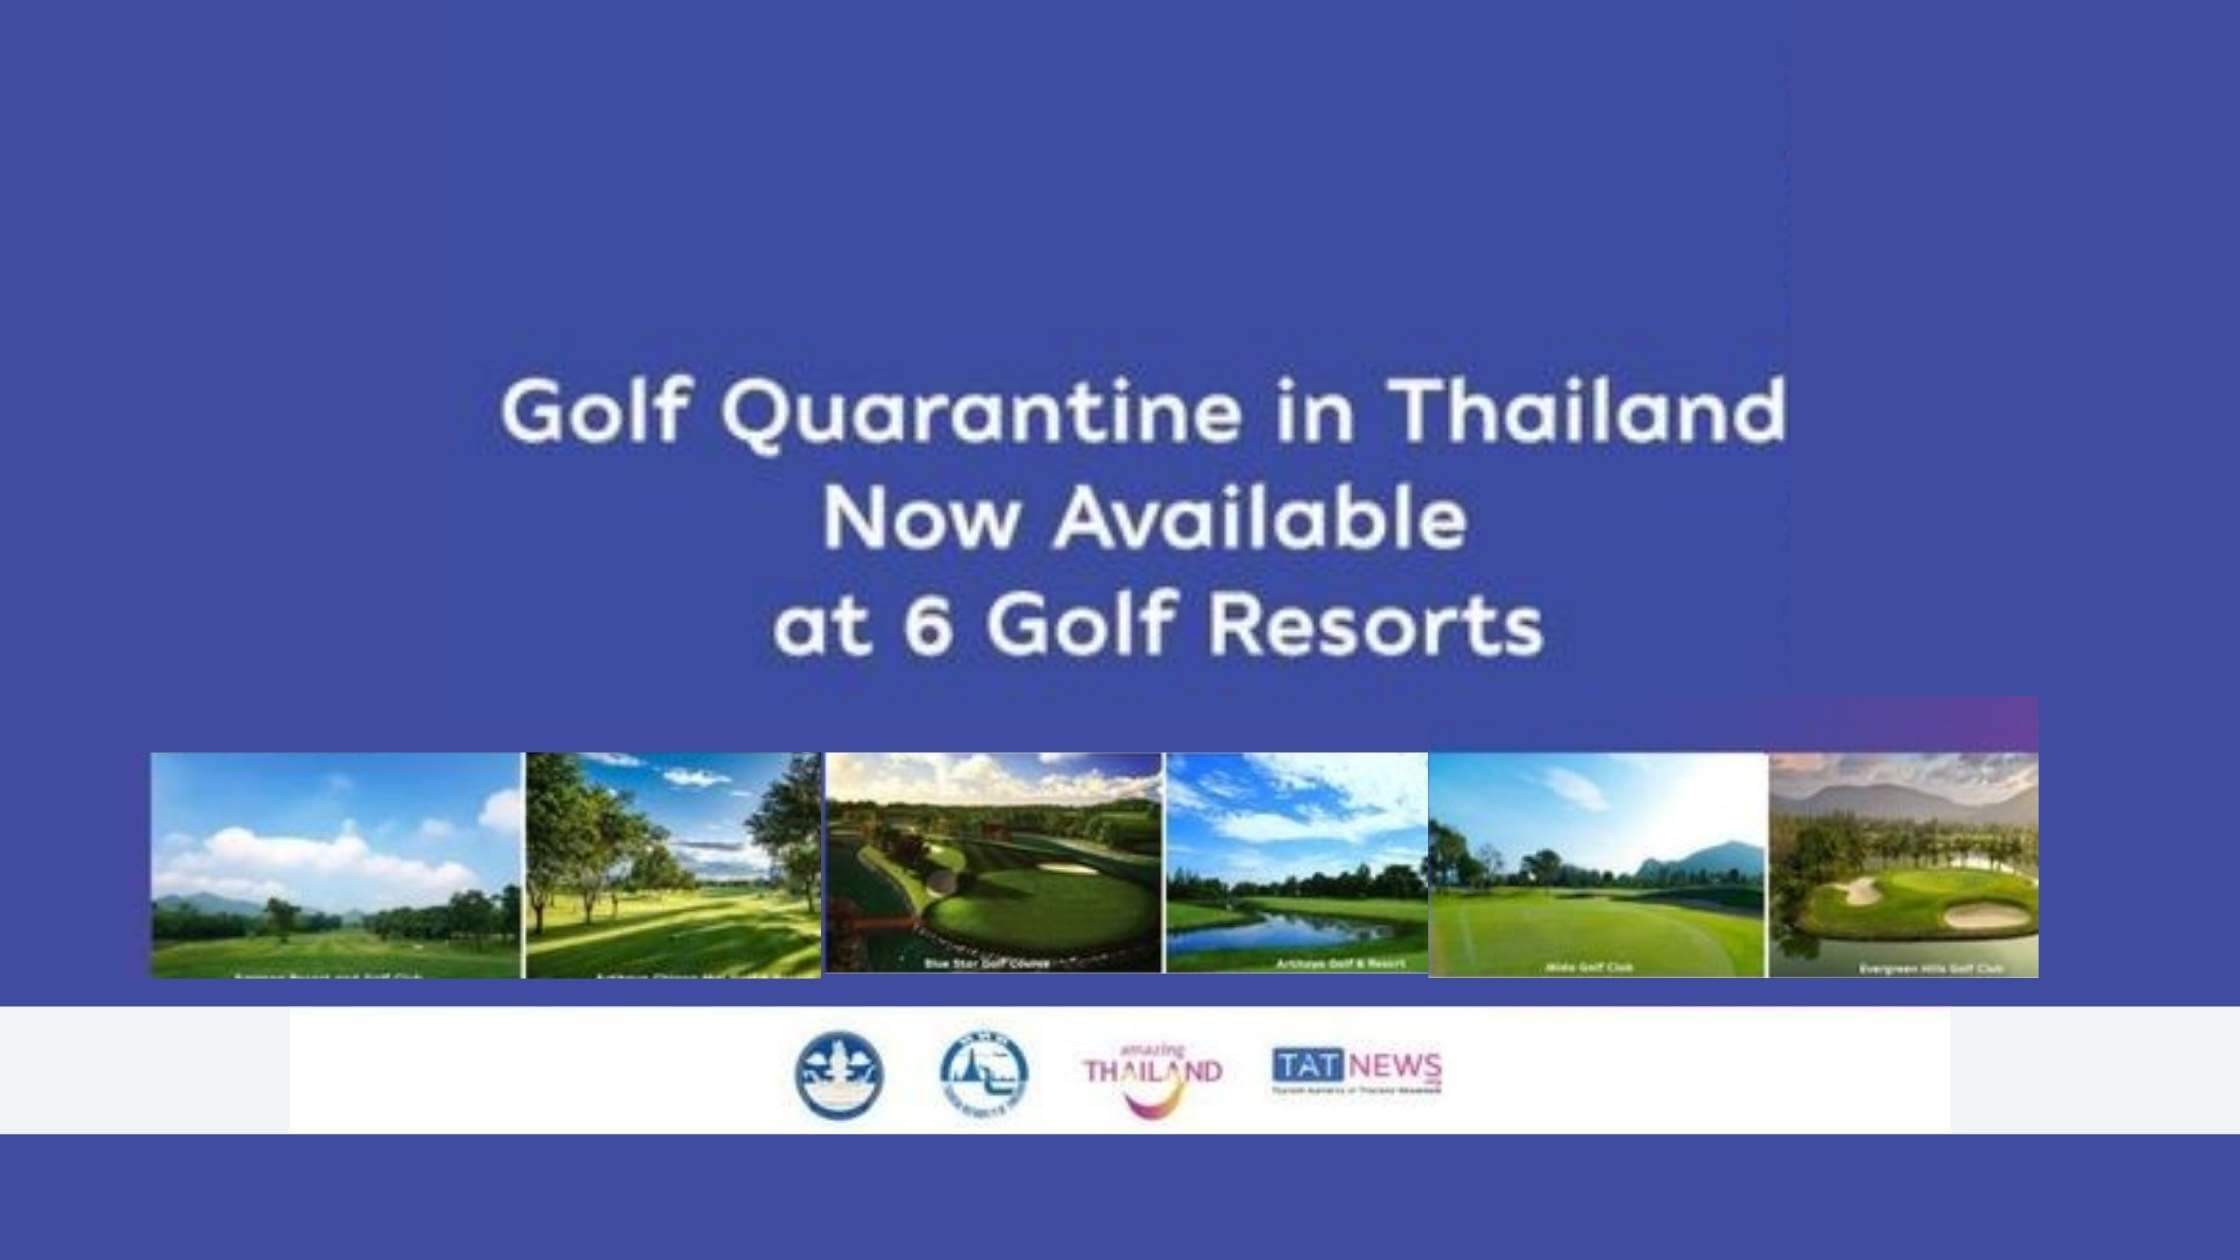 Golf Quarantine in Thailand